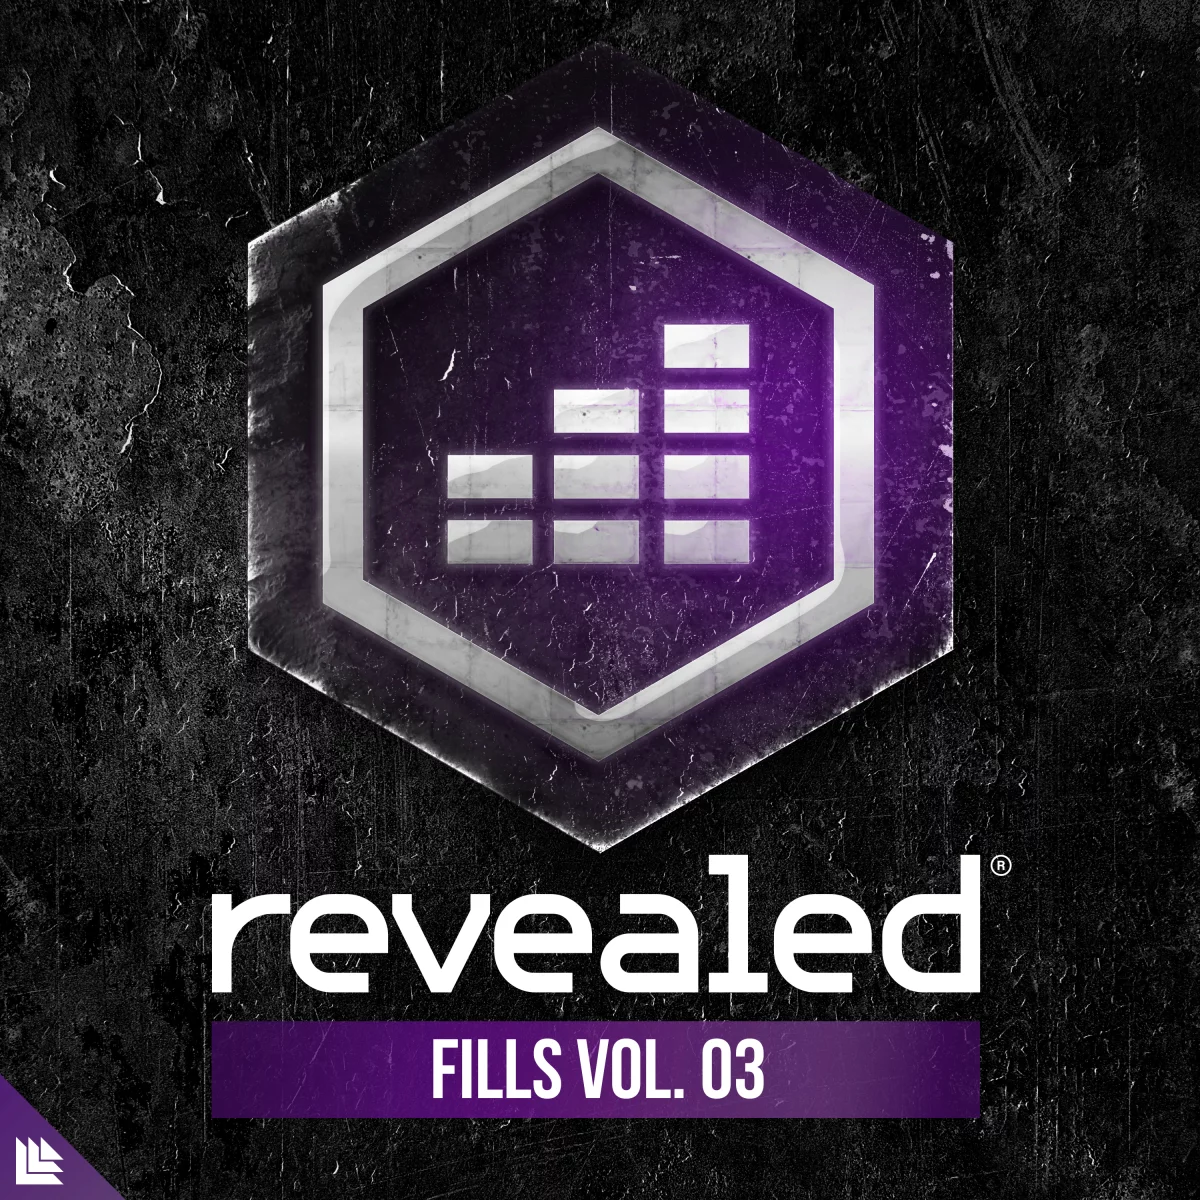 Revealed Fills Vol. 3 - revealedrec⁠ 